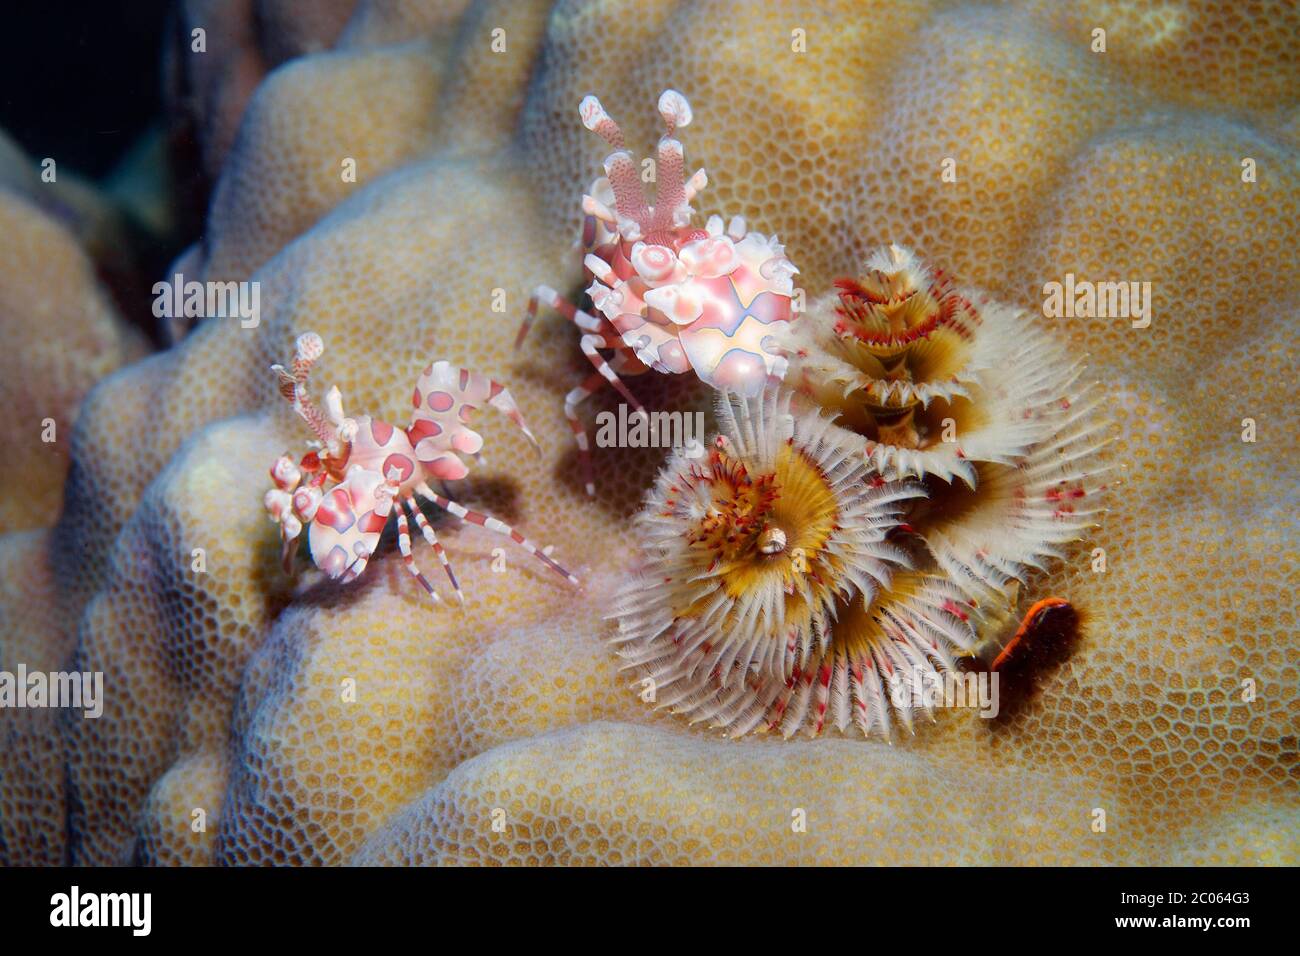 Dos camarones arlequinos (Hymenocera picta) frente al gusano de árbol de Navidad (Spirobranchus giganteus) Gran Barrera de Coral, Mar de Coral, Océano Pacífico, Australia Foto de stock